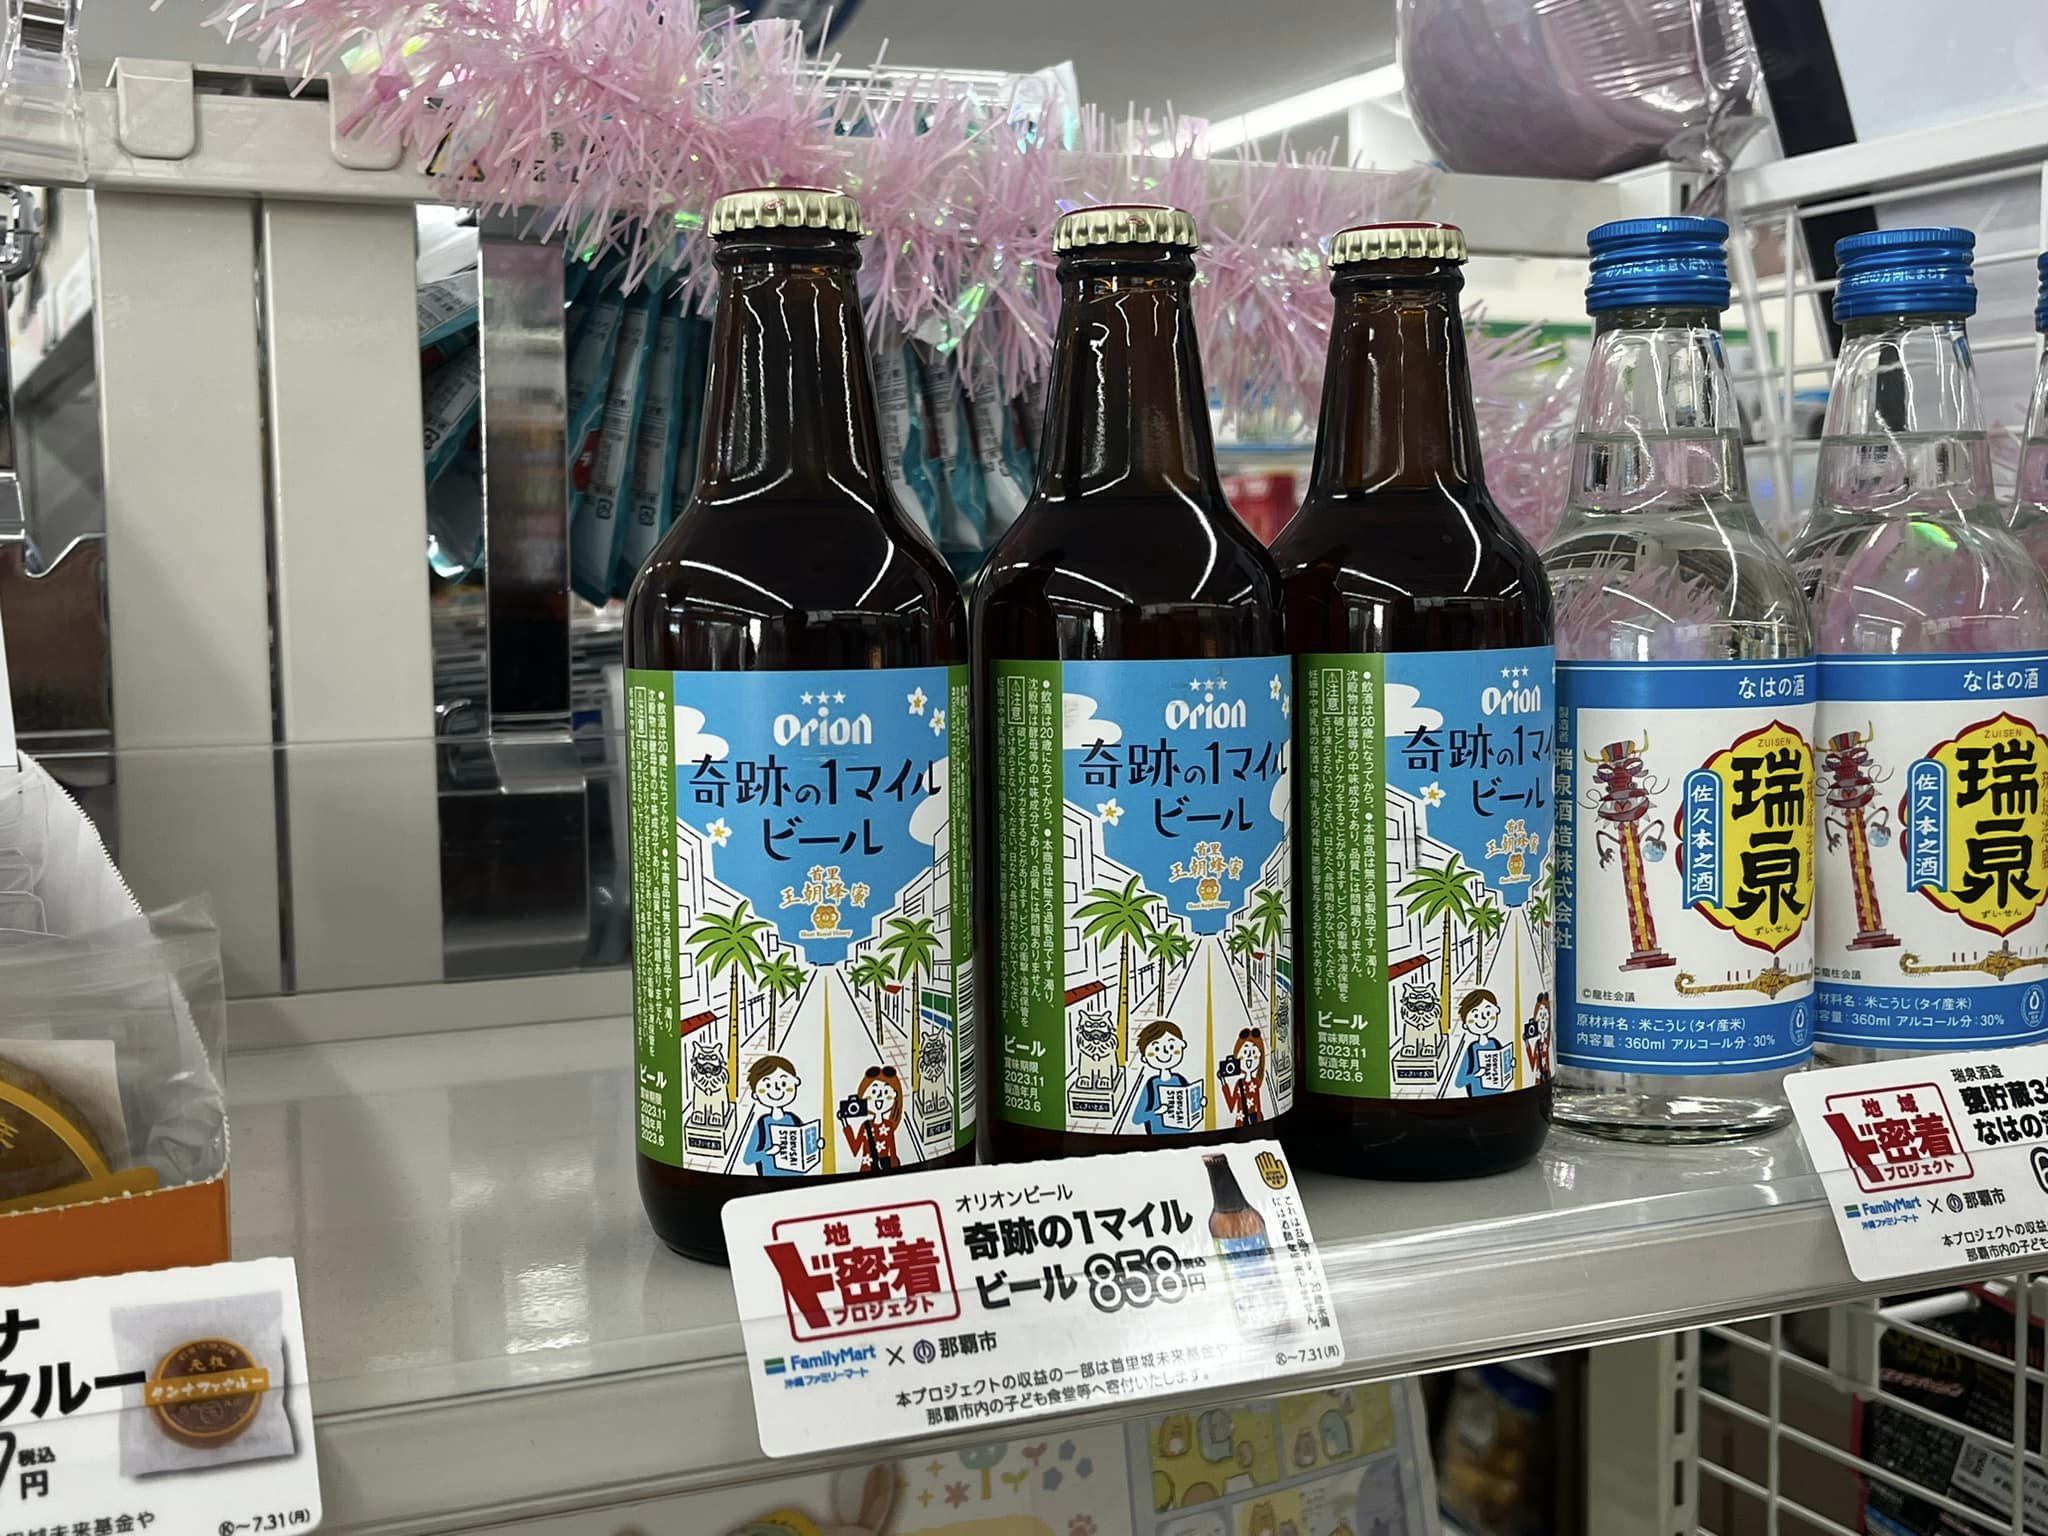 沖縄ファミリーマート「地域ド密着プロジェクト」において首里王朝蜂蜜を使った商品を販売してます